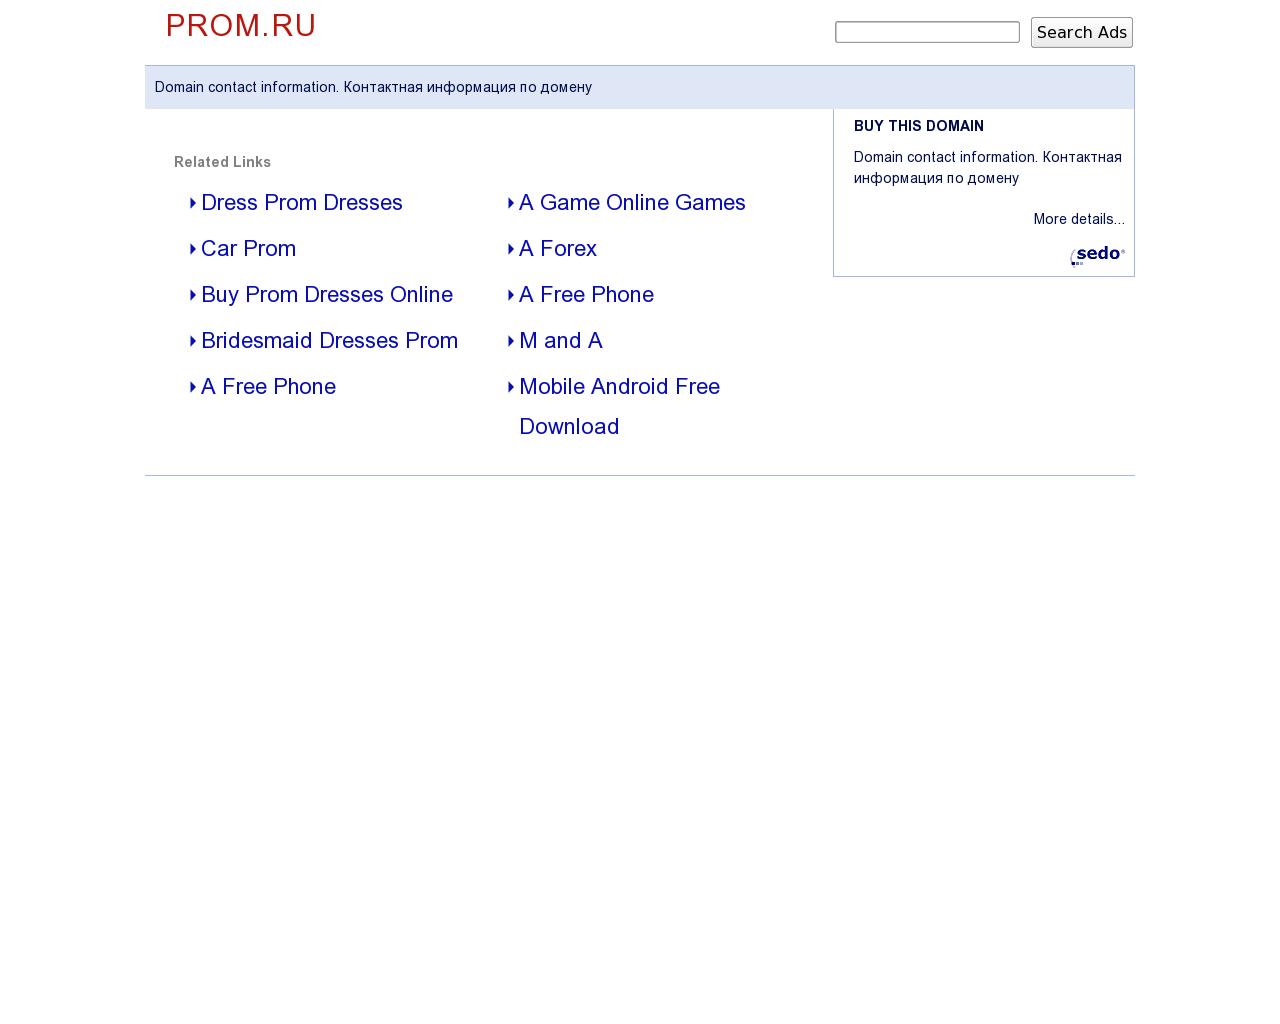 Изображение сайта prom.ru в разрешении 1280x1024